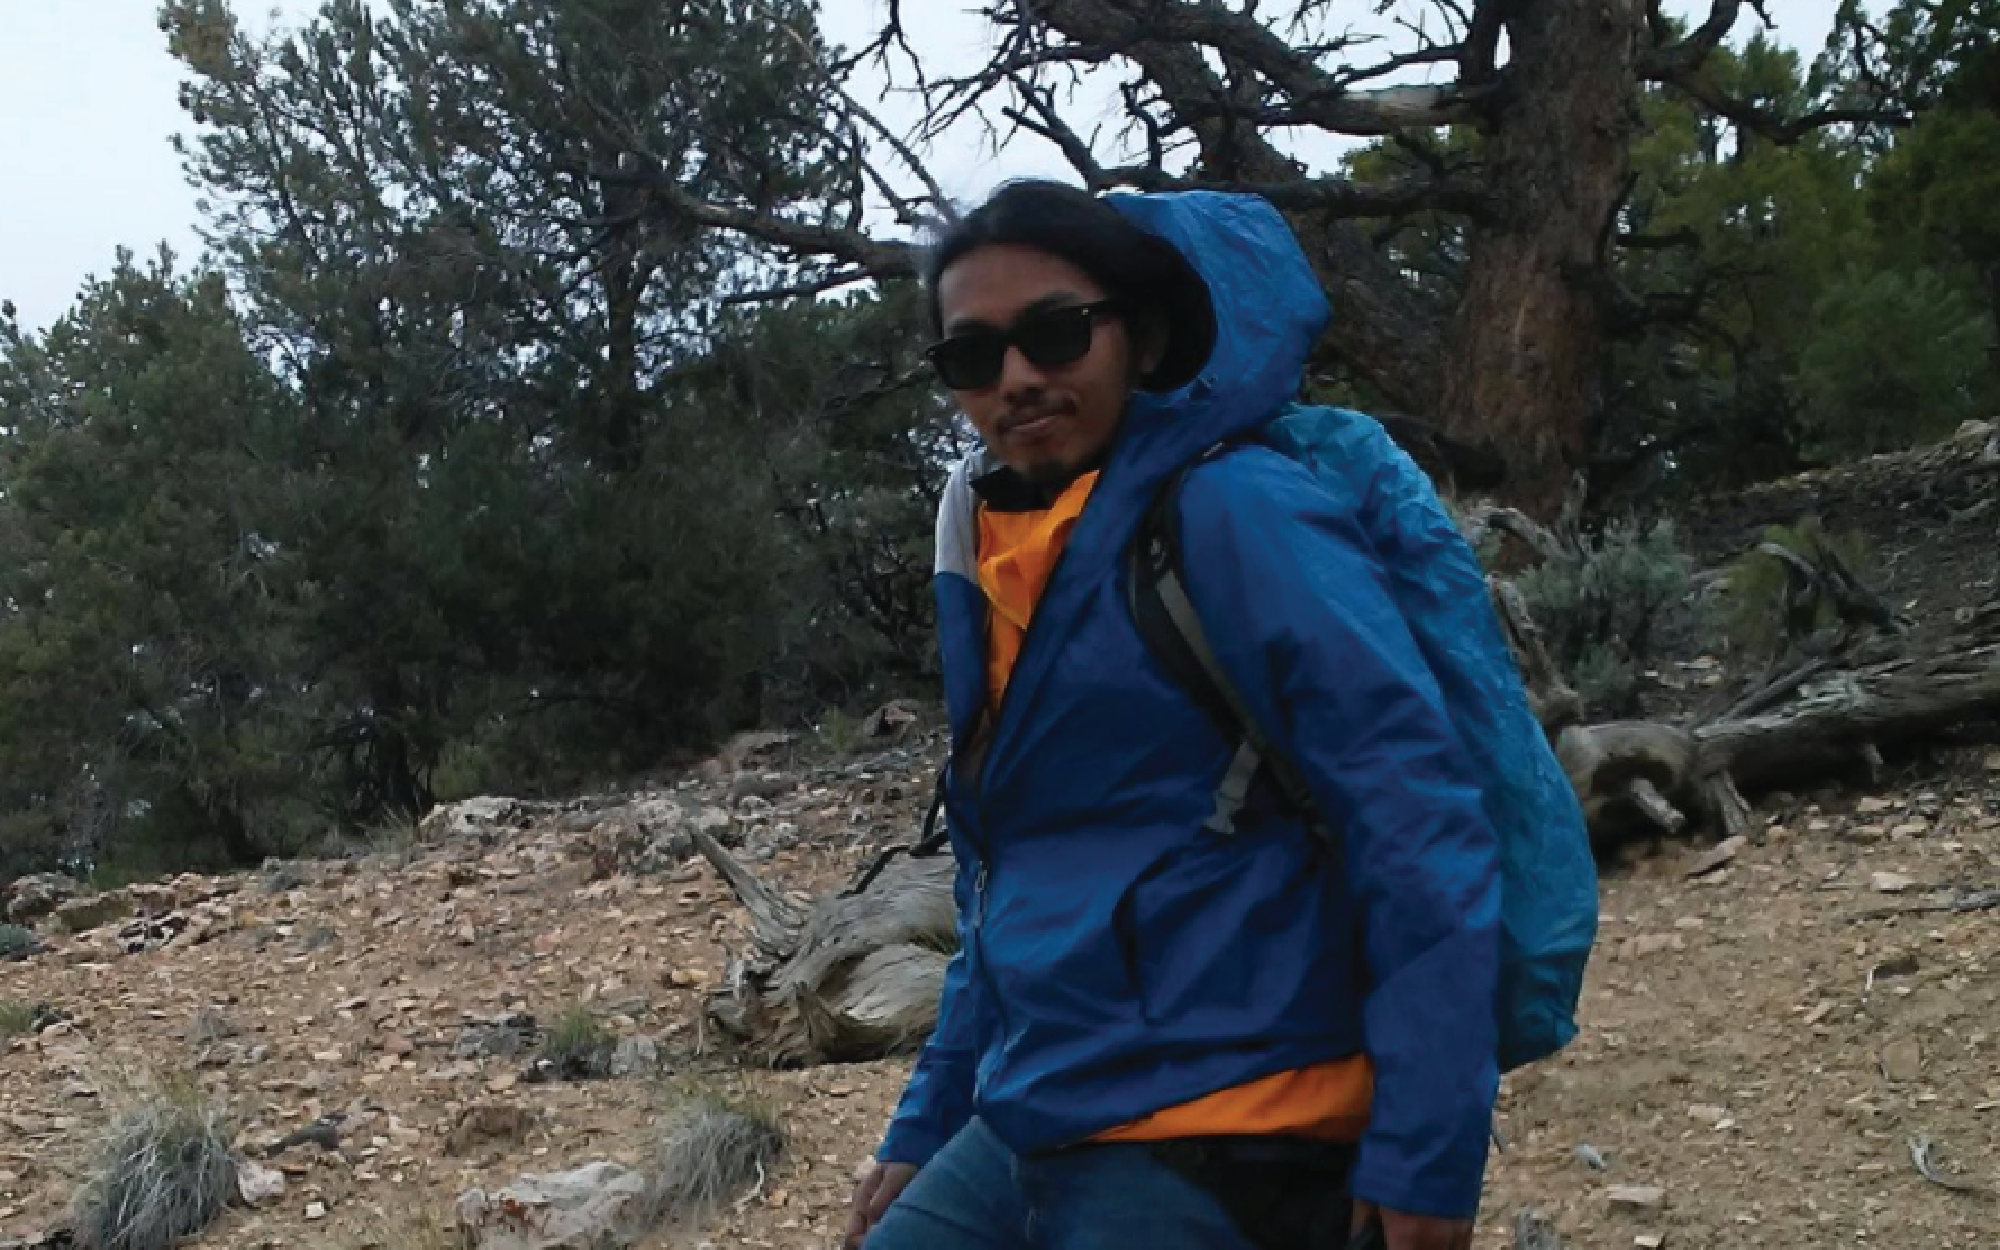 Graduate student Datu Adiatma hiking